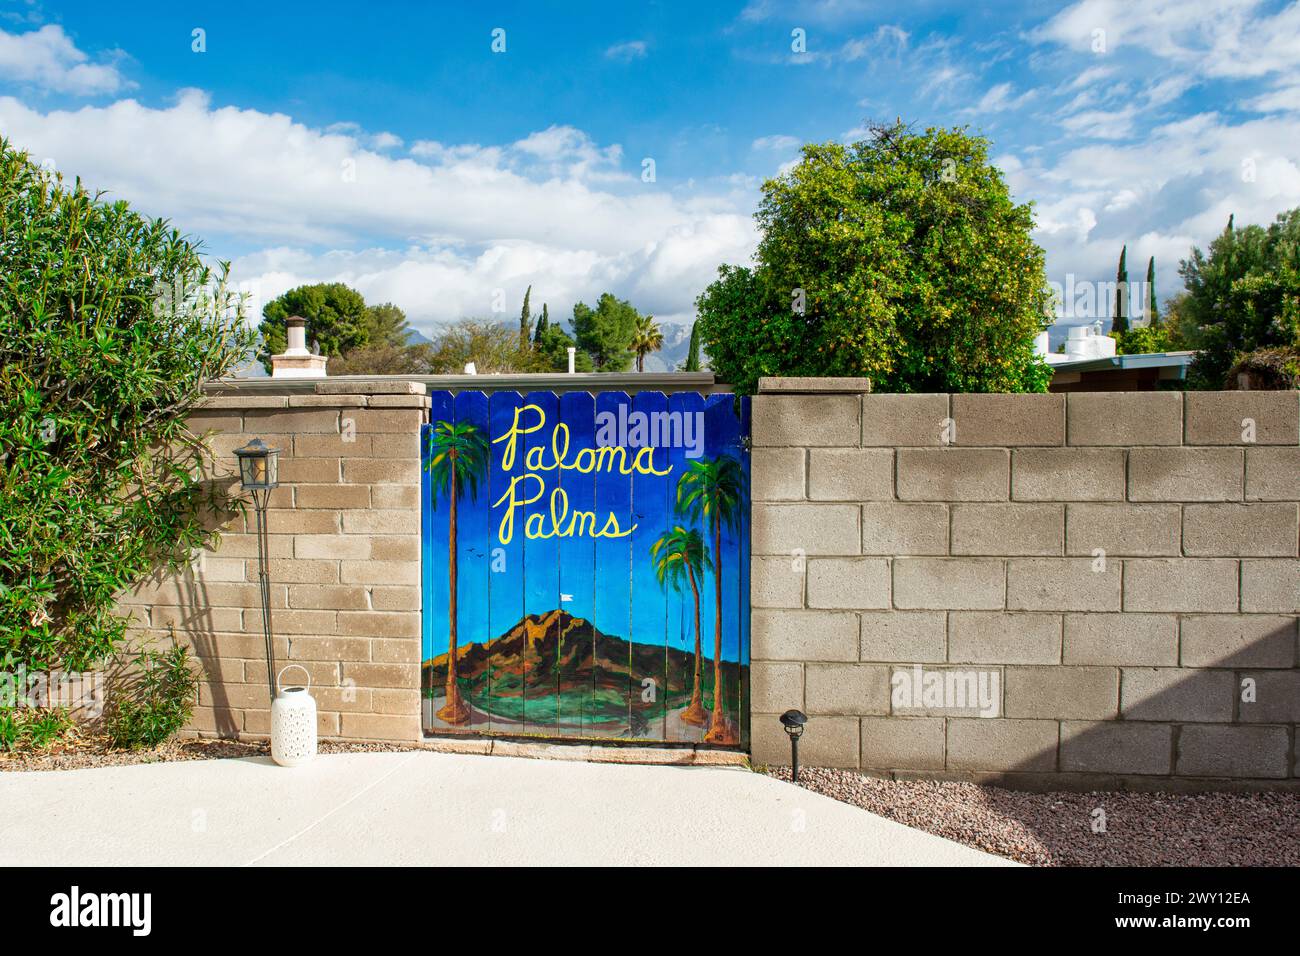 Pool home - Arizona vivant dans la banlieue de Tucson. Banque D'Images